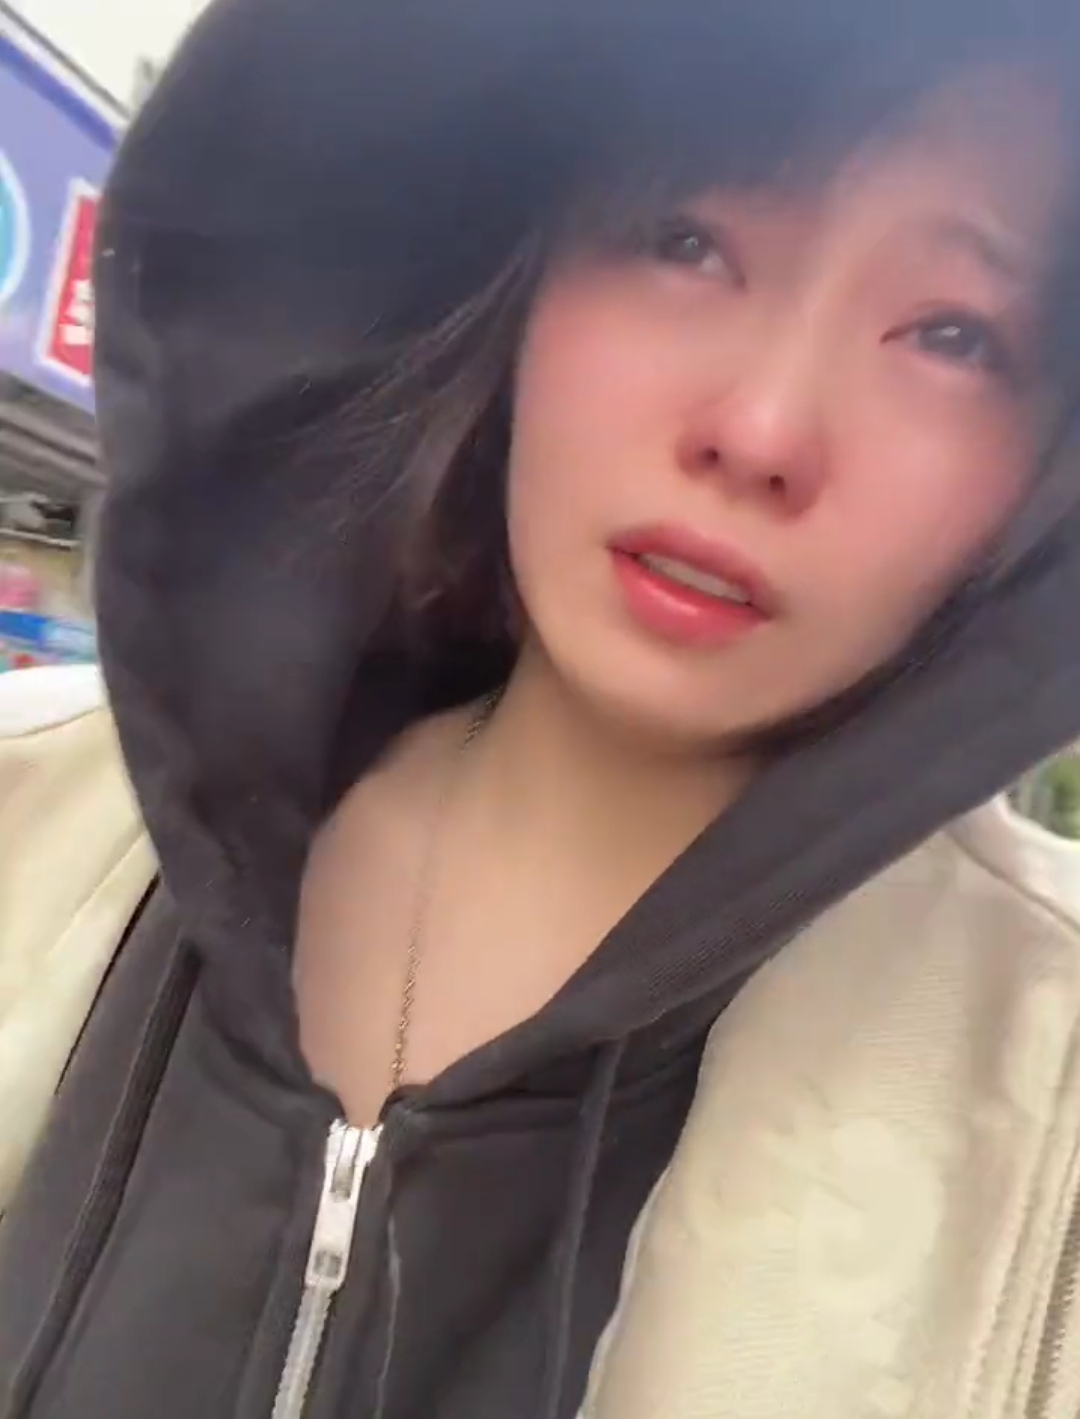 【동영상】AV 여배우씨, 3500만엔 보유한 카드를 분실하고 울어버린 wwww